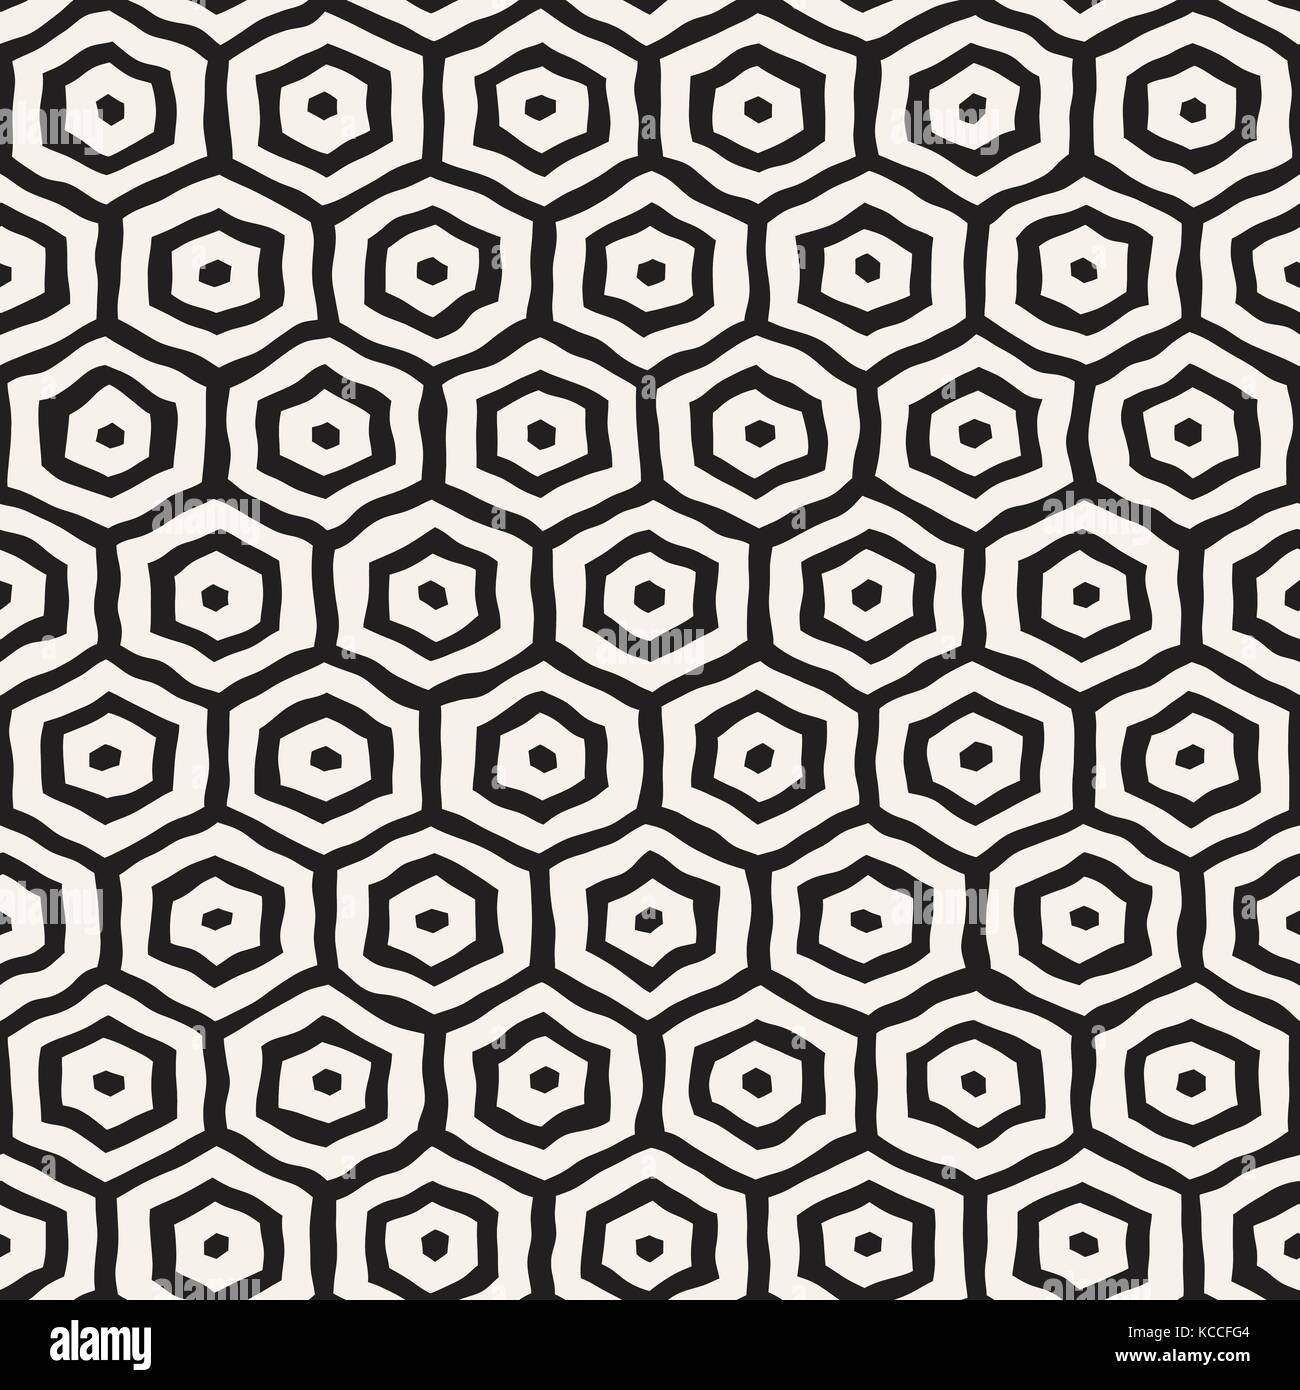 Un motif en noir et blanc avec treillis hexagonal. creative dessinés à la main, fond noir en nid. Illustration de Vecteur